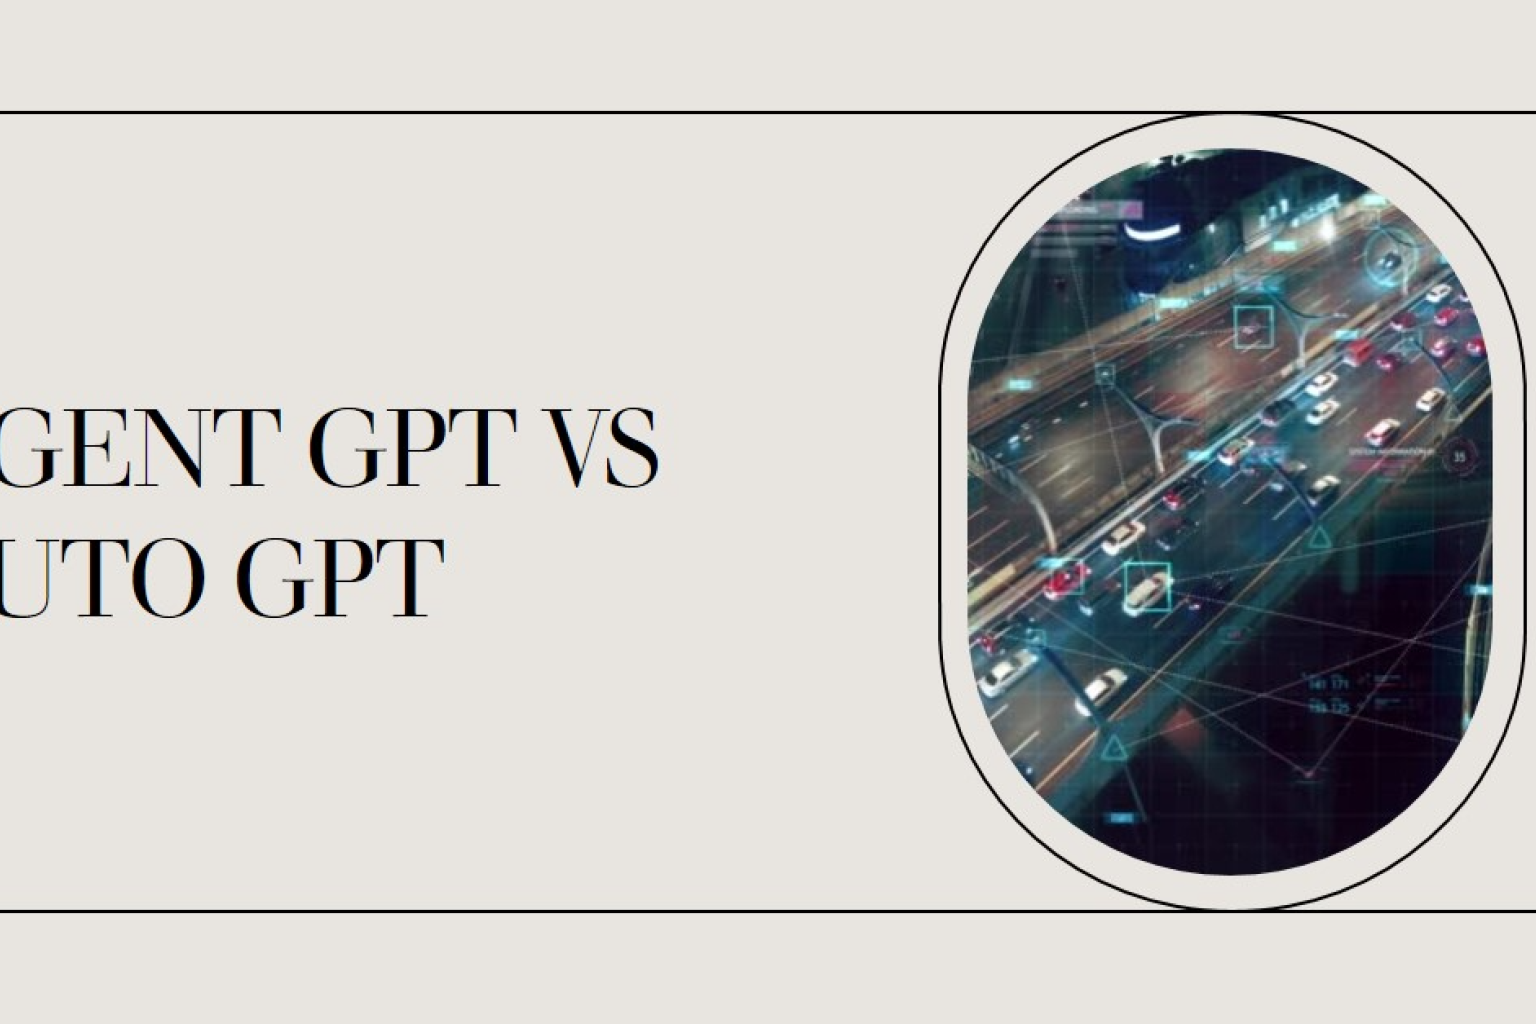 Un análisis completo de Agent GPT y Auto GPT de OpenAI, explicando sus características, diferencias y casos de uso óptimos.